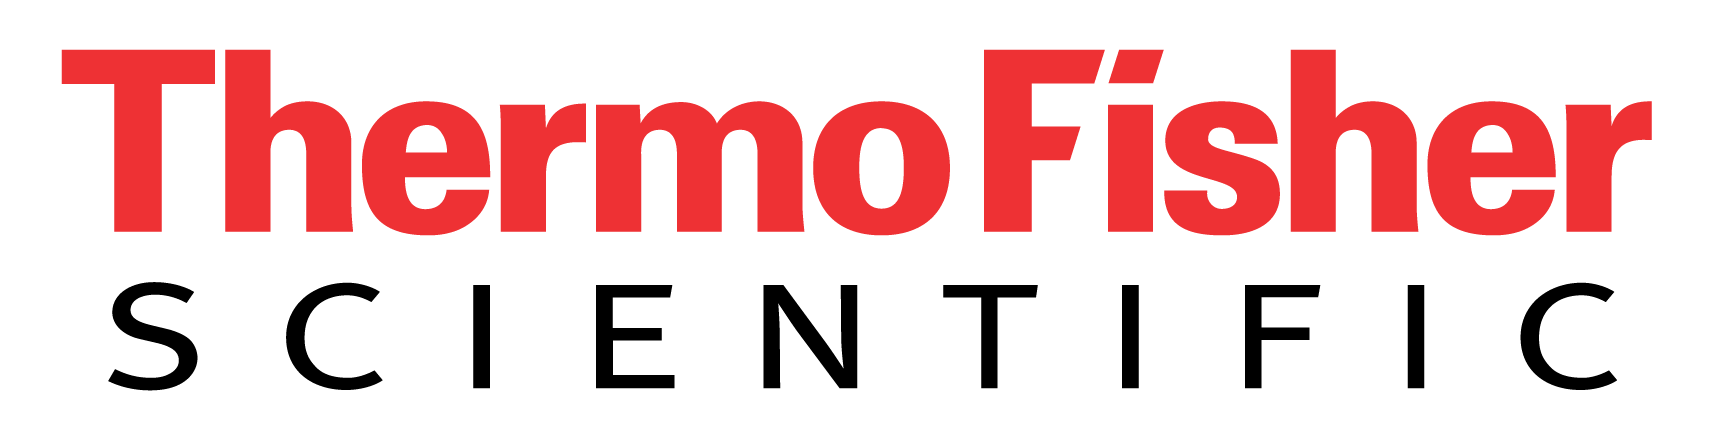 Logotipo de Thermo Fisher